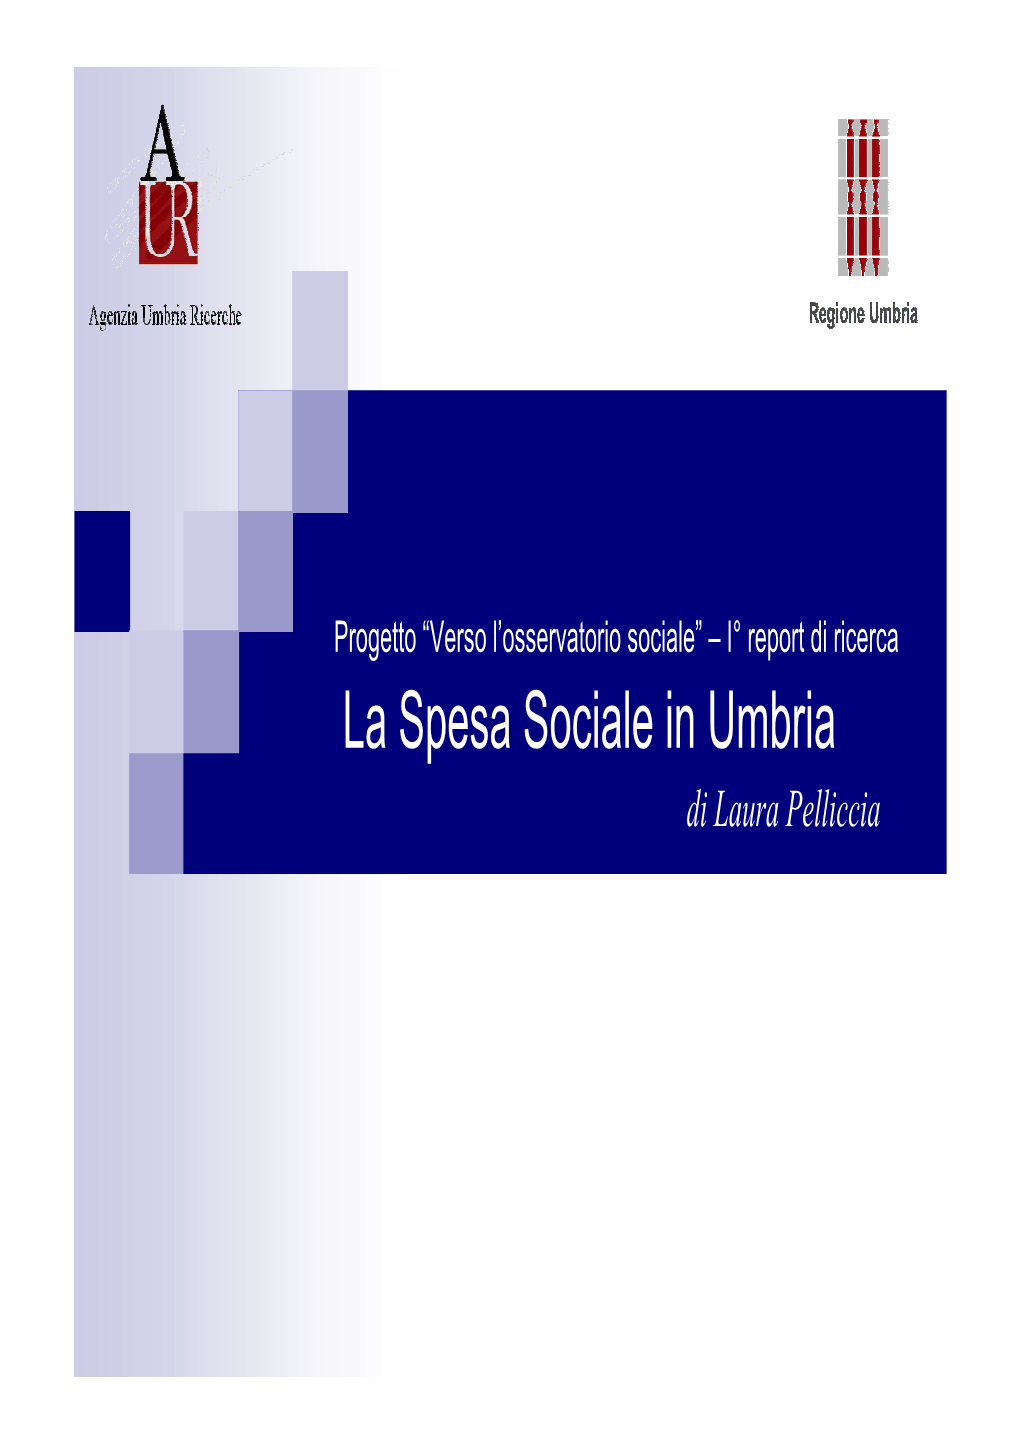 La Spesa Sociale in Umbria Di Laura Pelliccia Composizione Della Spesa Sociale Corrente